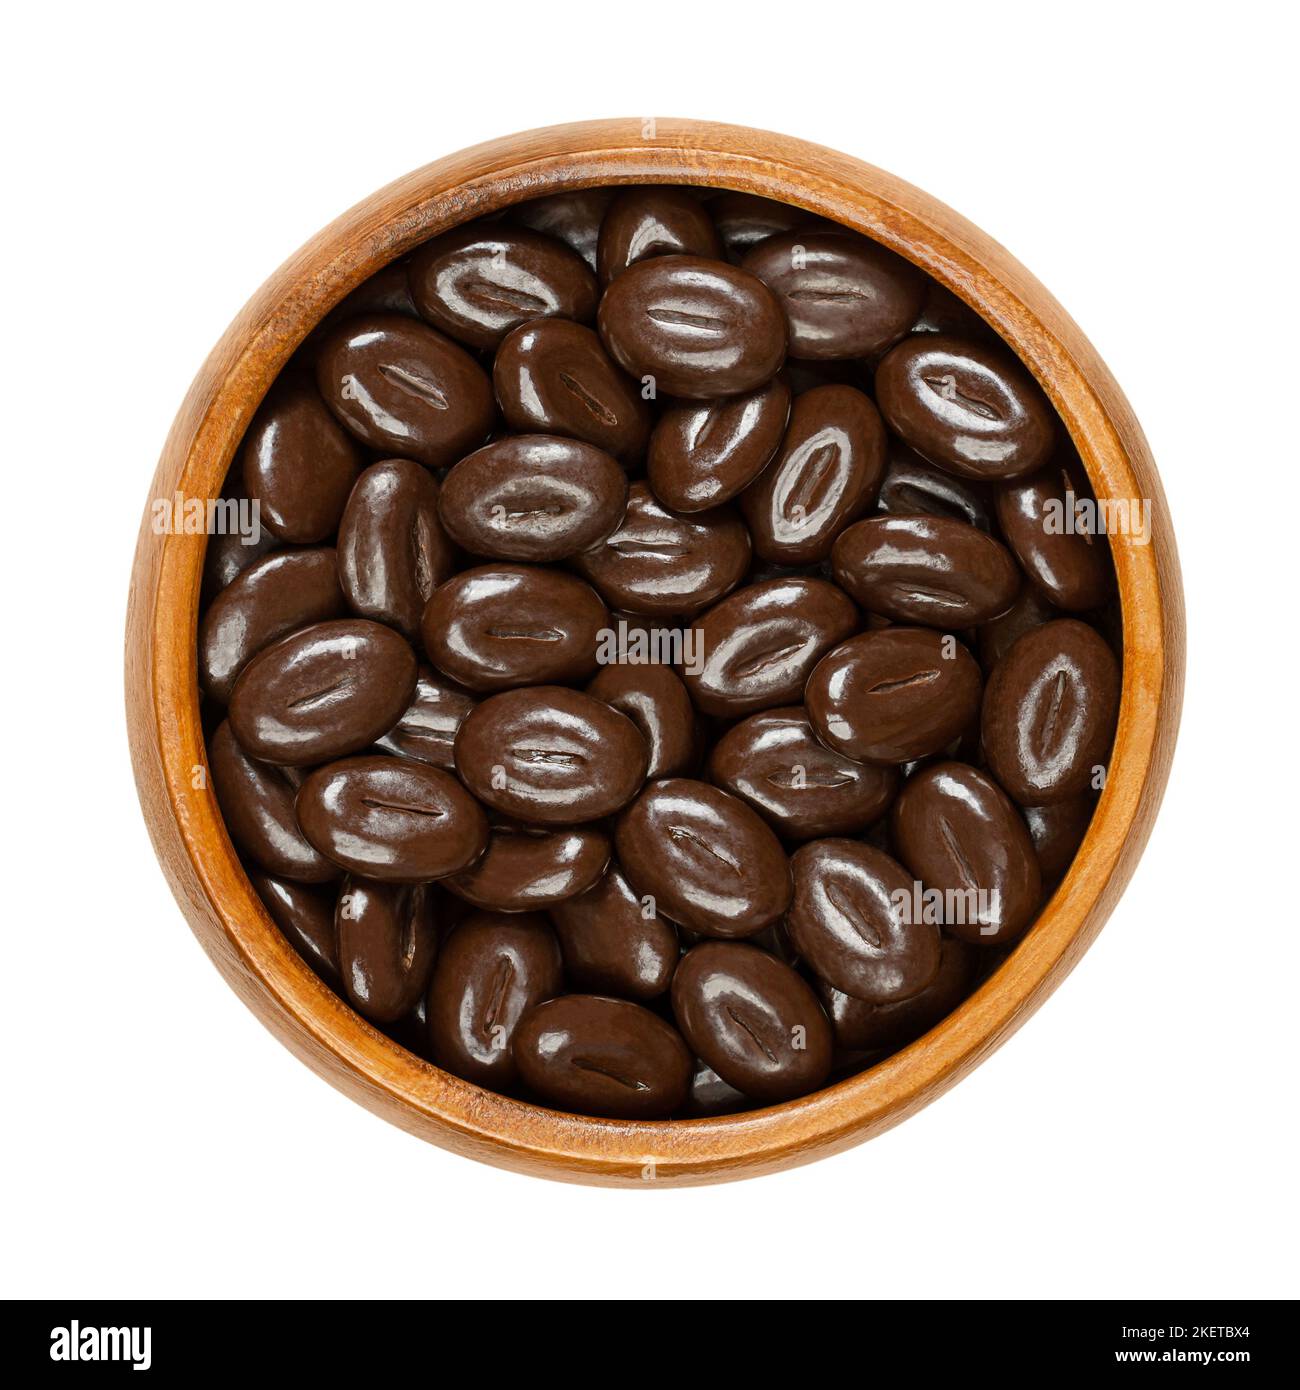 Fave di mocha al cioccolato fondente, in una ciotola di legno. Caramelle a base di una miscela di aroma di caffè in grani con cioccolato fondente, a forma di chicchi di caffè. Foto Stock